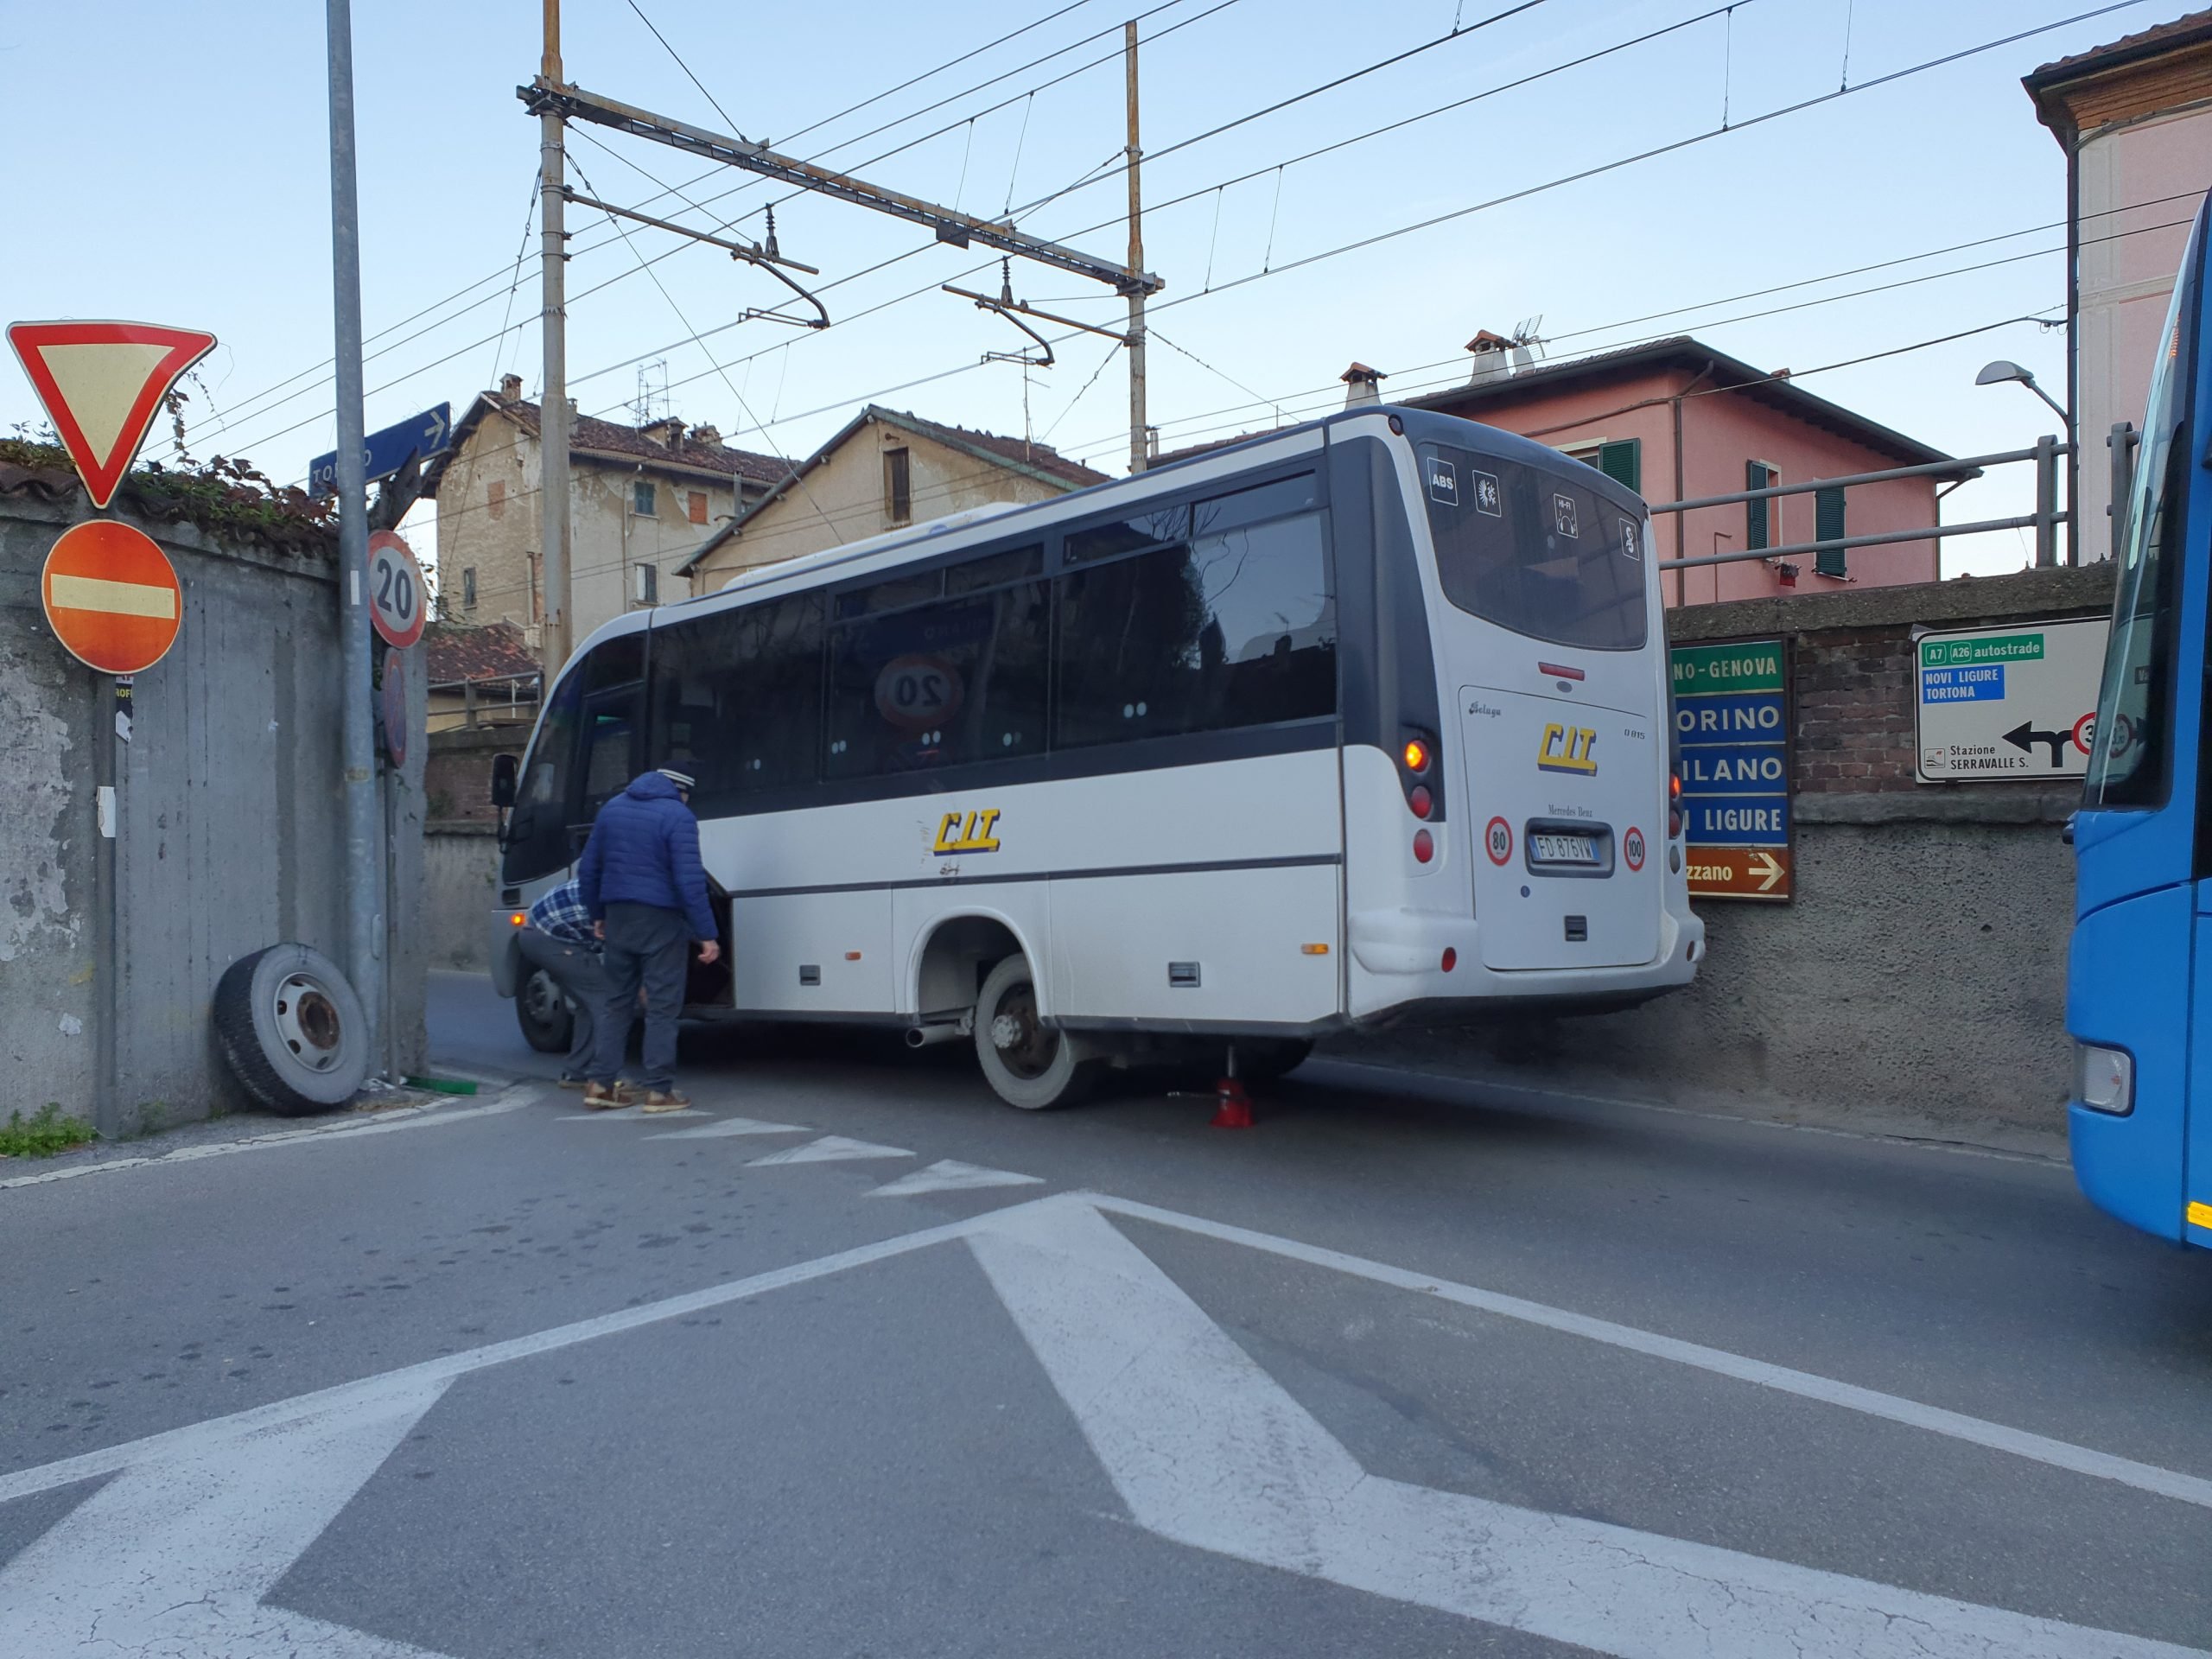 Tutti e 5 i bulloni saltano e il bus perde la ruota: traffico in tilt a Serravalle